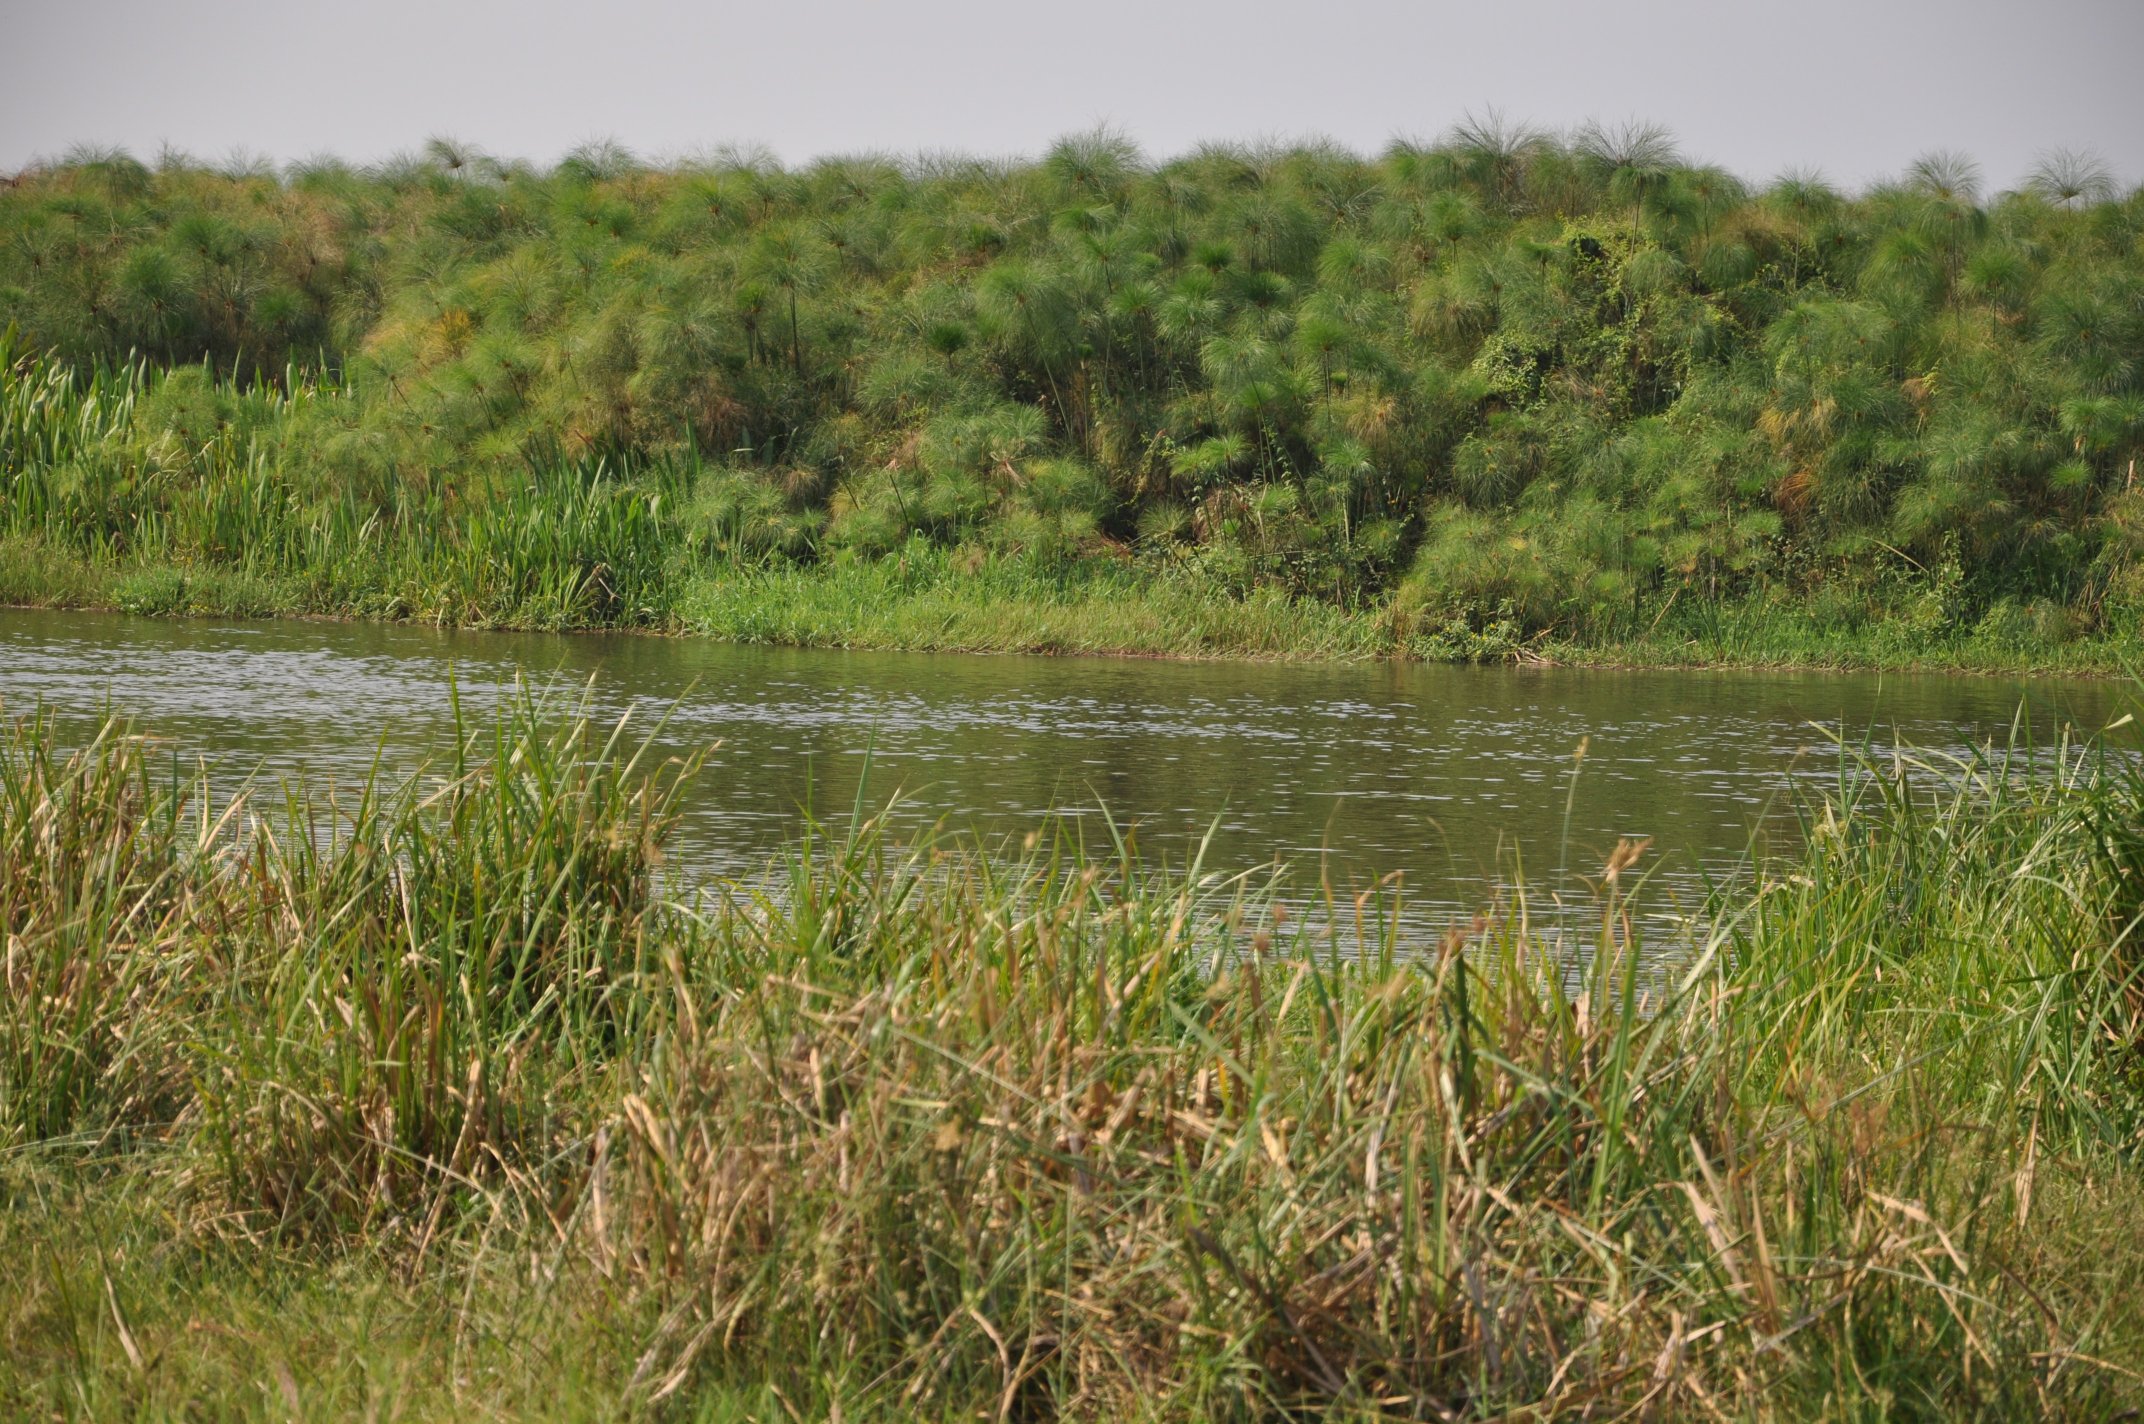 1. Typical habitat, Nile delta at Lake Albert